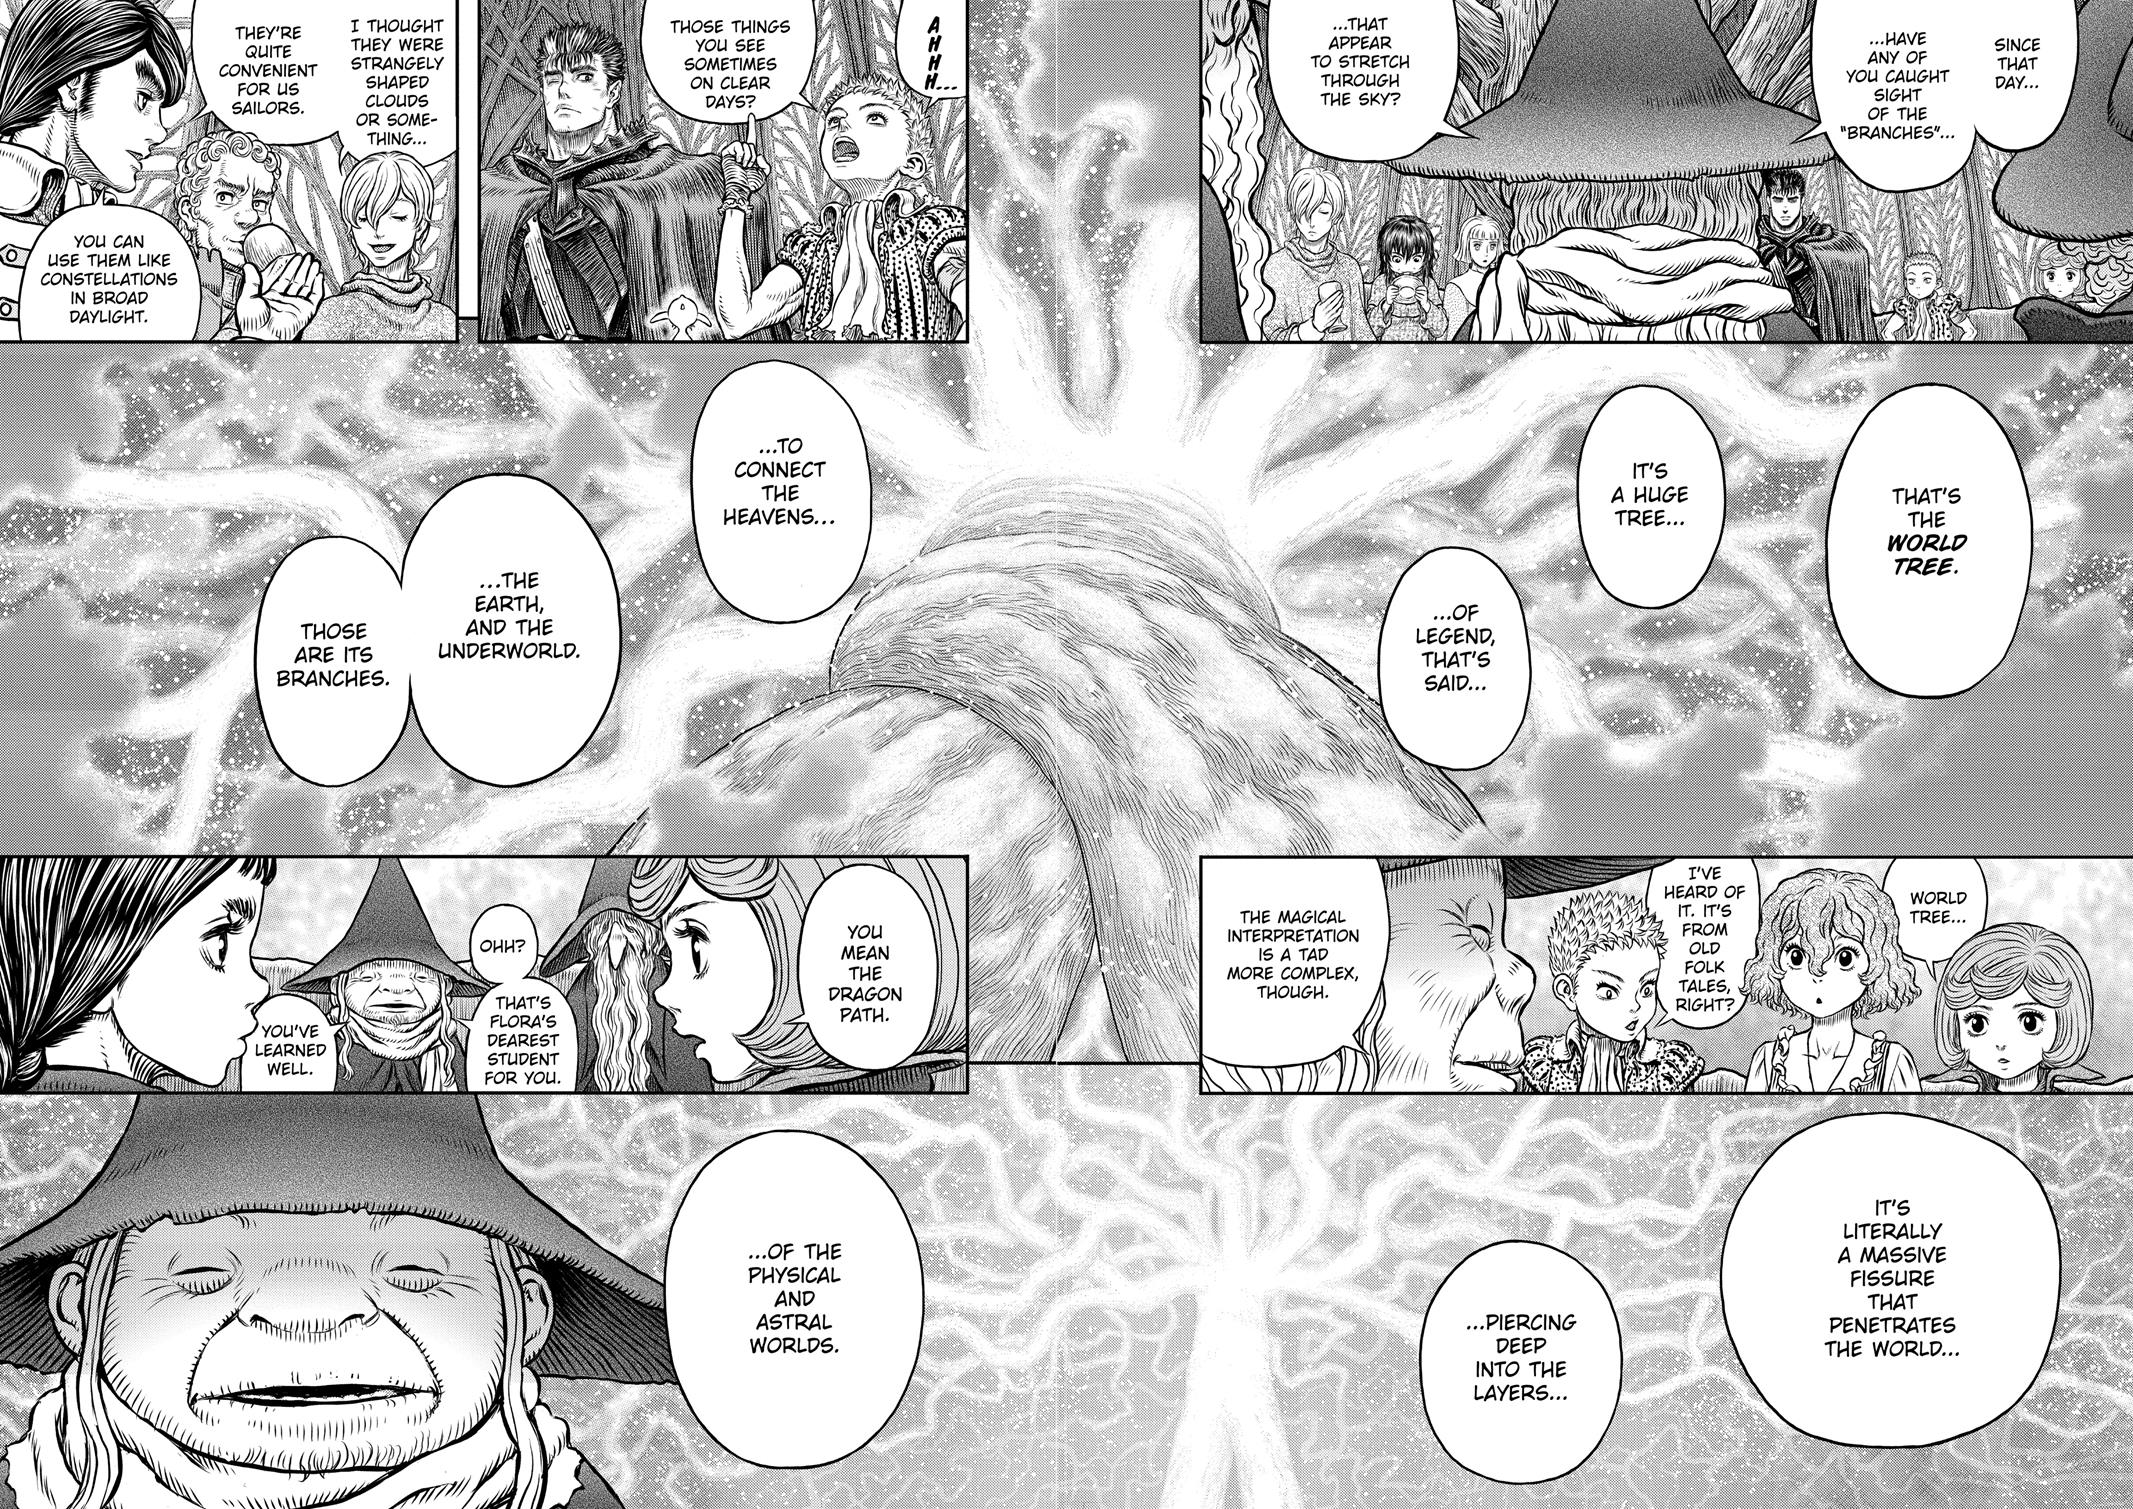 Berserk Manga Chapter 345 image 10